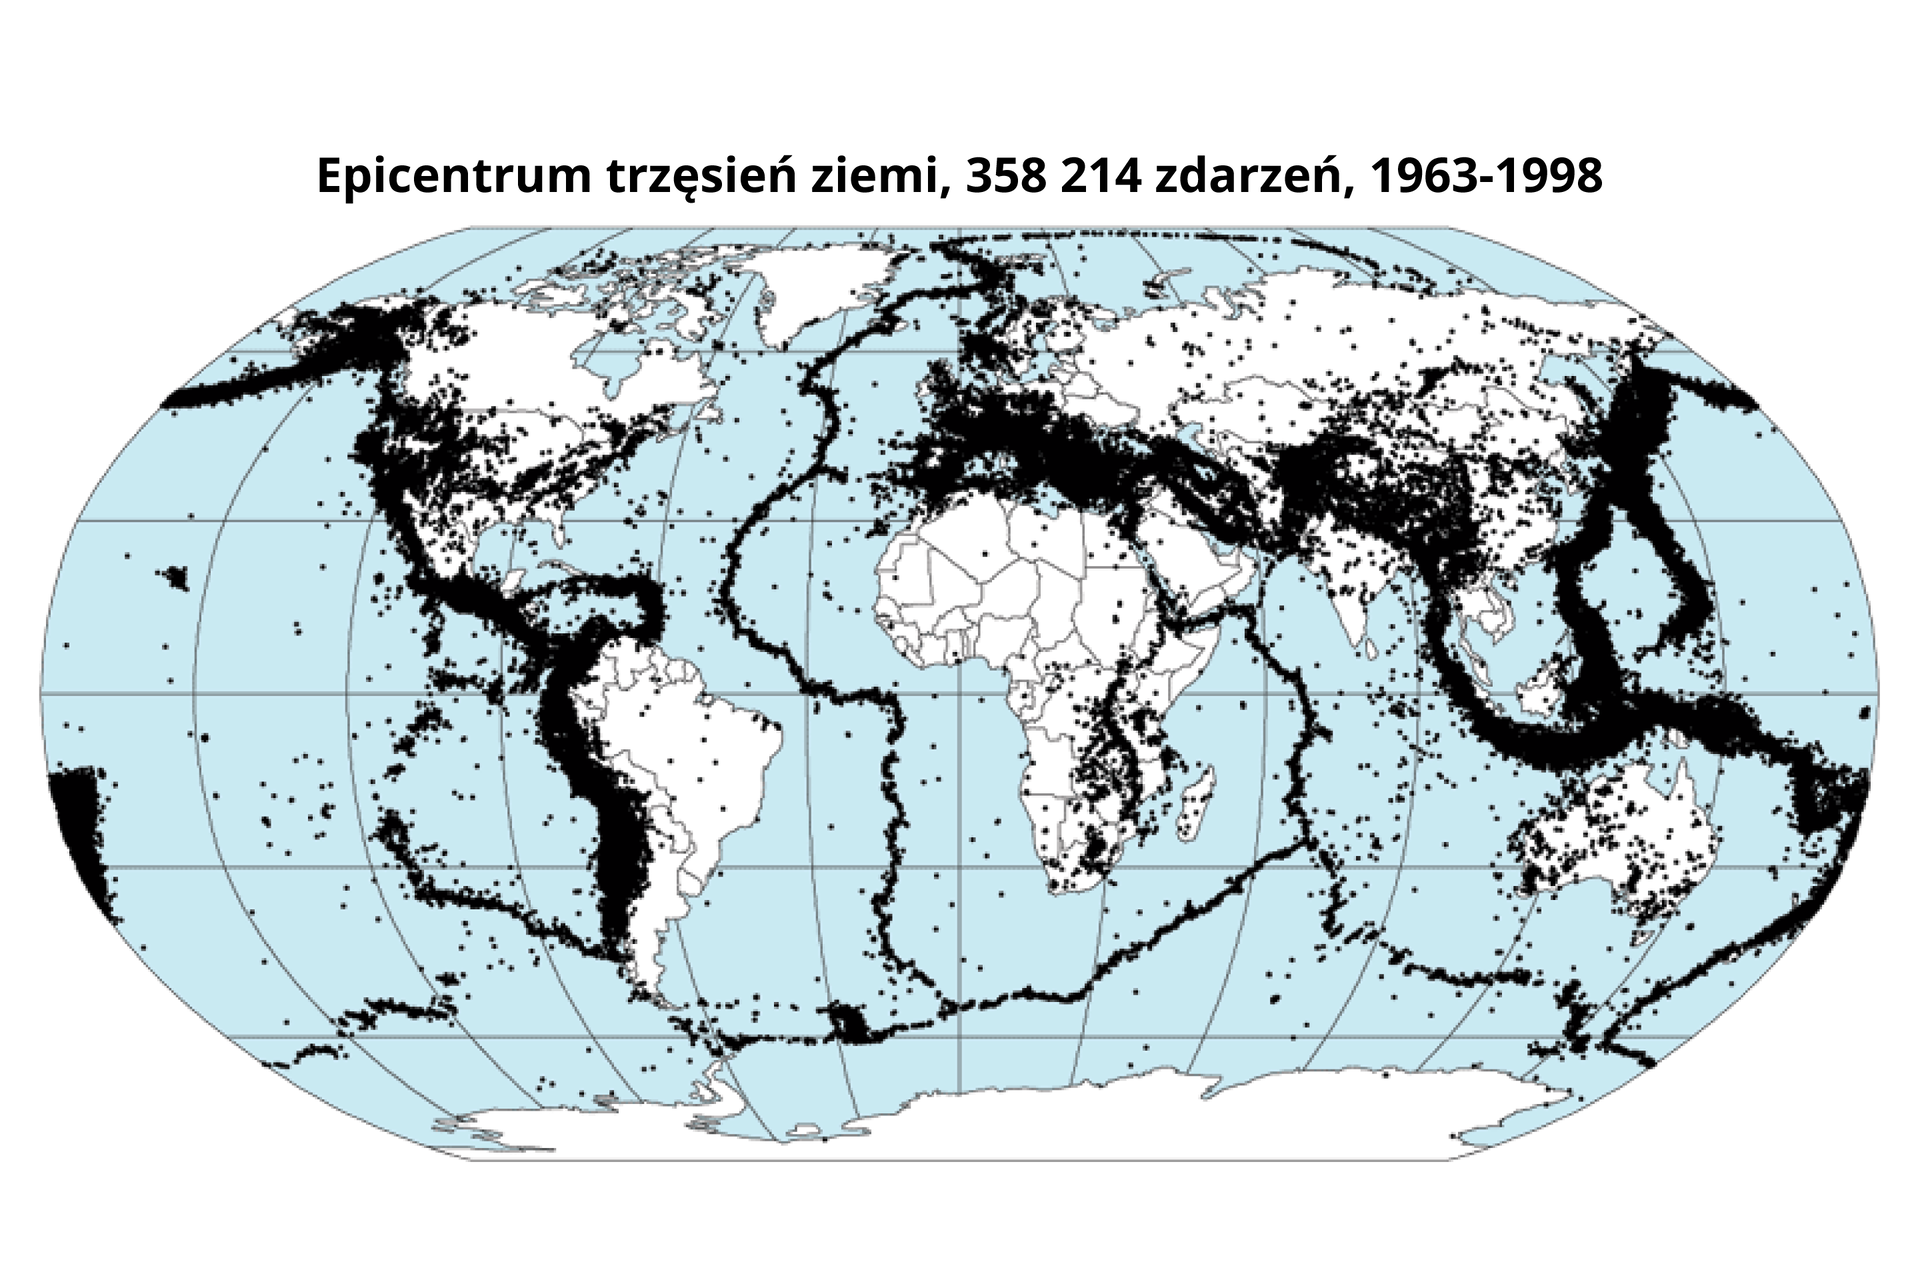 Mapa przedstawia przestrzenne rozmieszczenie trzęsień ziemi na naszej planecie. Trzęsienia ziemi zostały oznaczone na mapie świata czarnymi punktami. Przechodzą one głównie przez zachodnie wybrzeże obu Ameryk. Są skupione wzdłuż linii na oceanie, a także w dużej ilości występują w południowej Europie i południowej Azji, skąd dalej przechodzą przez obszar oceanu wzdłuż wschodniego brzegu Azji oraz przed obszar między Azją południową a Australią.